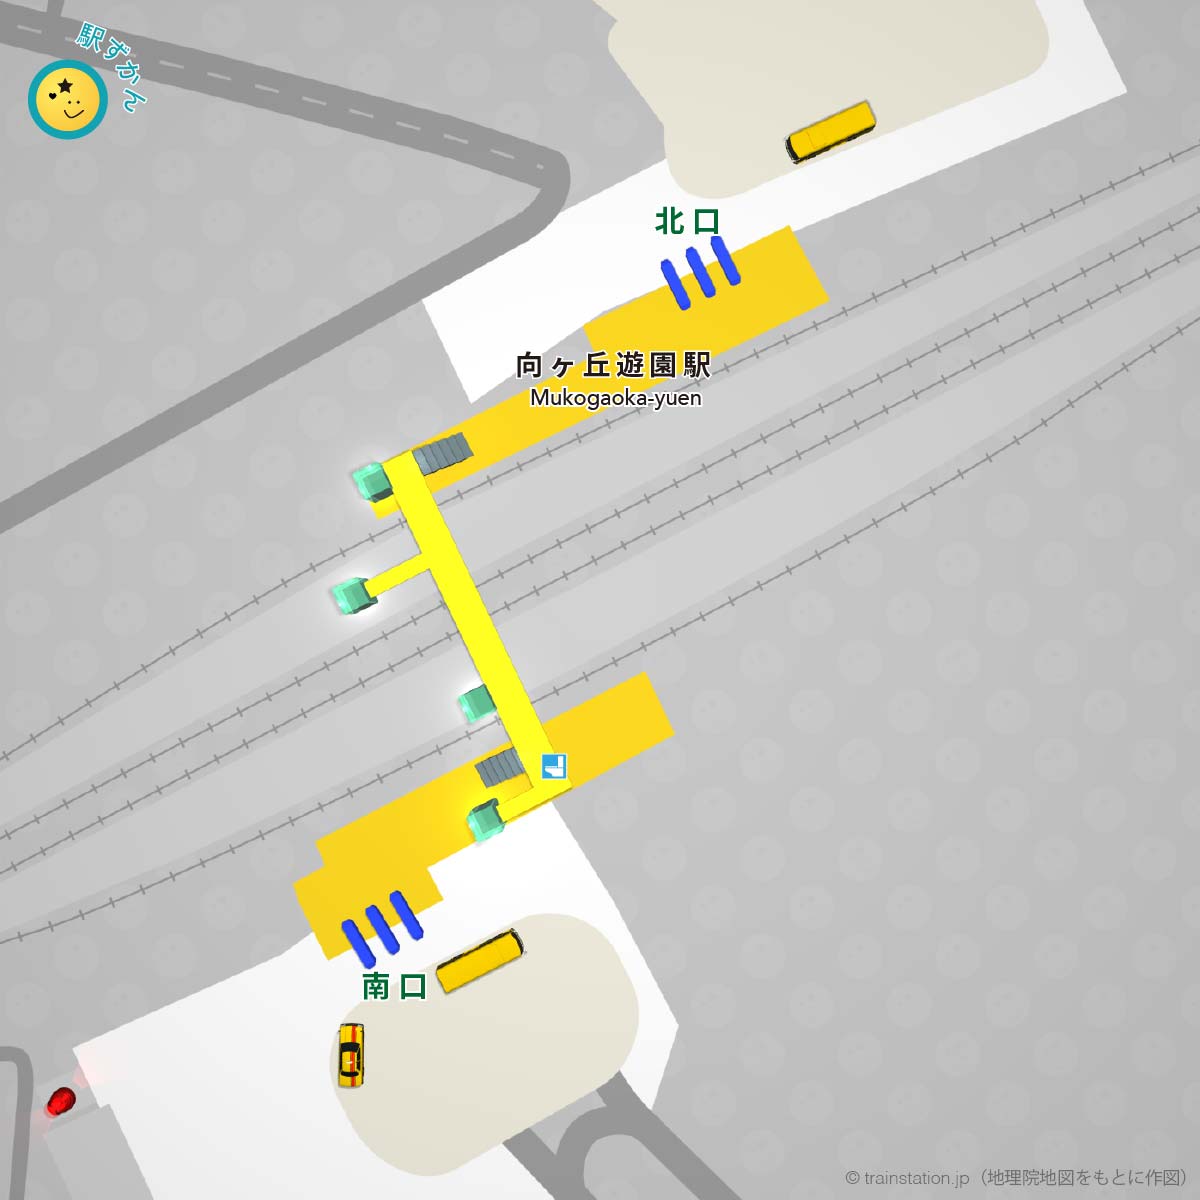 向ヶ丘遊園駅構内図と周辺マップ